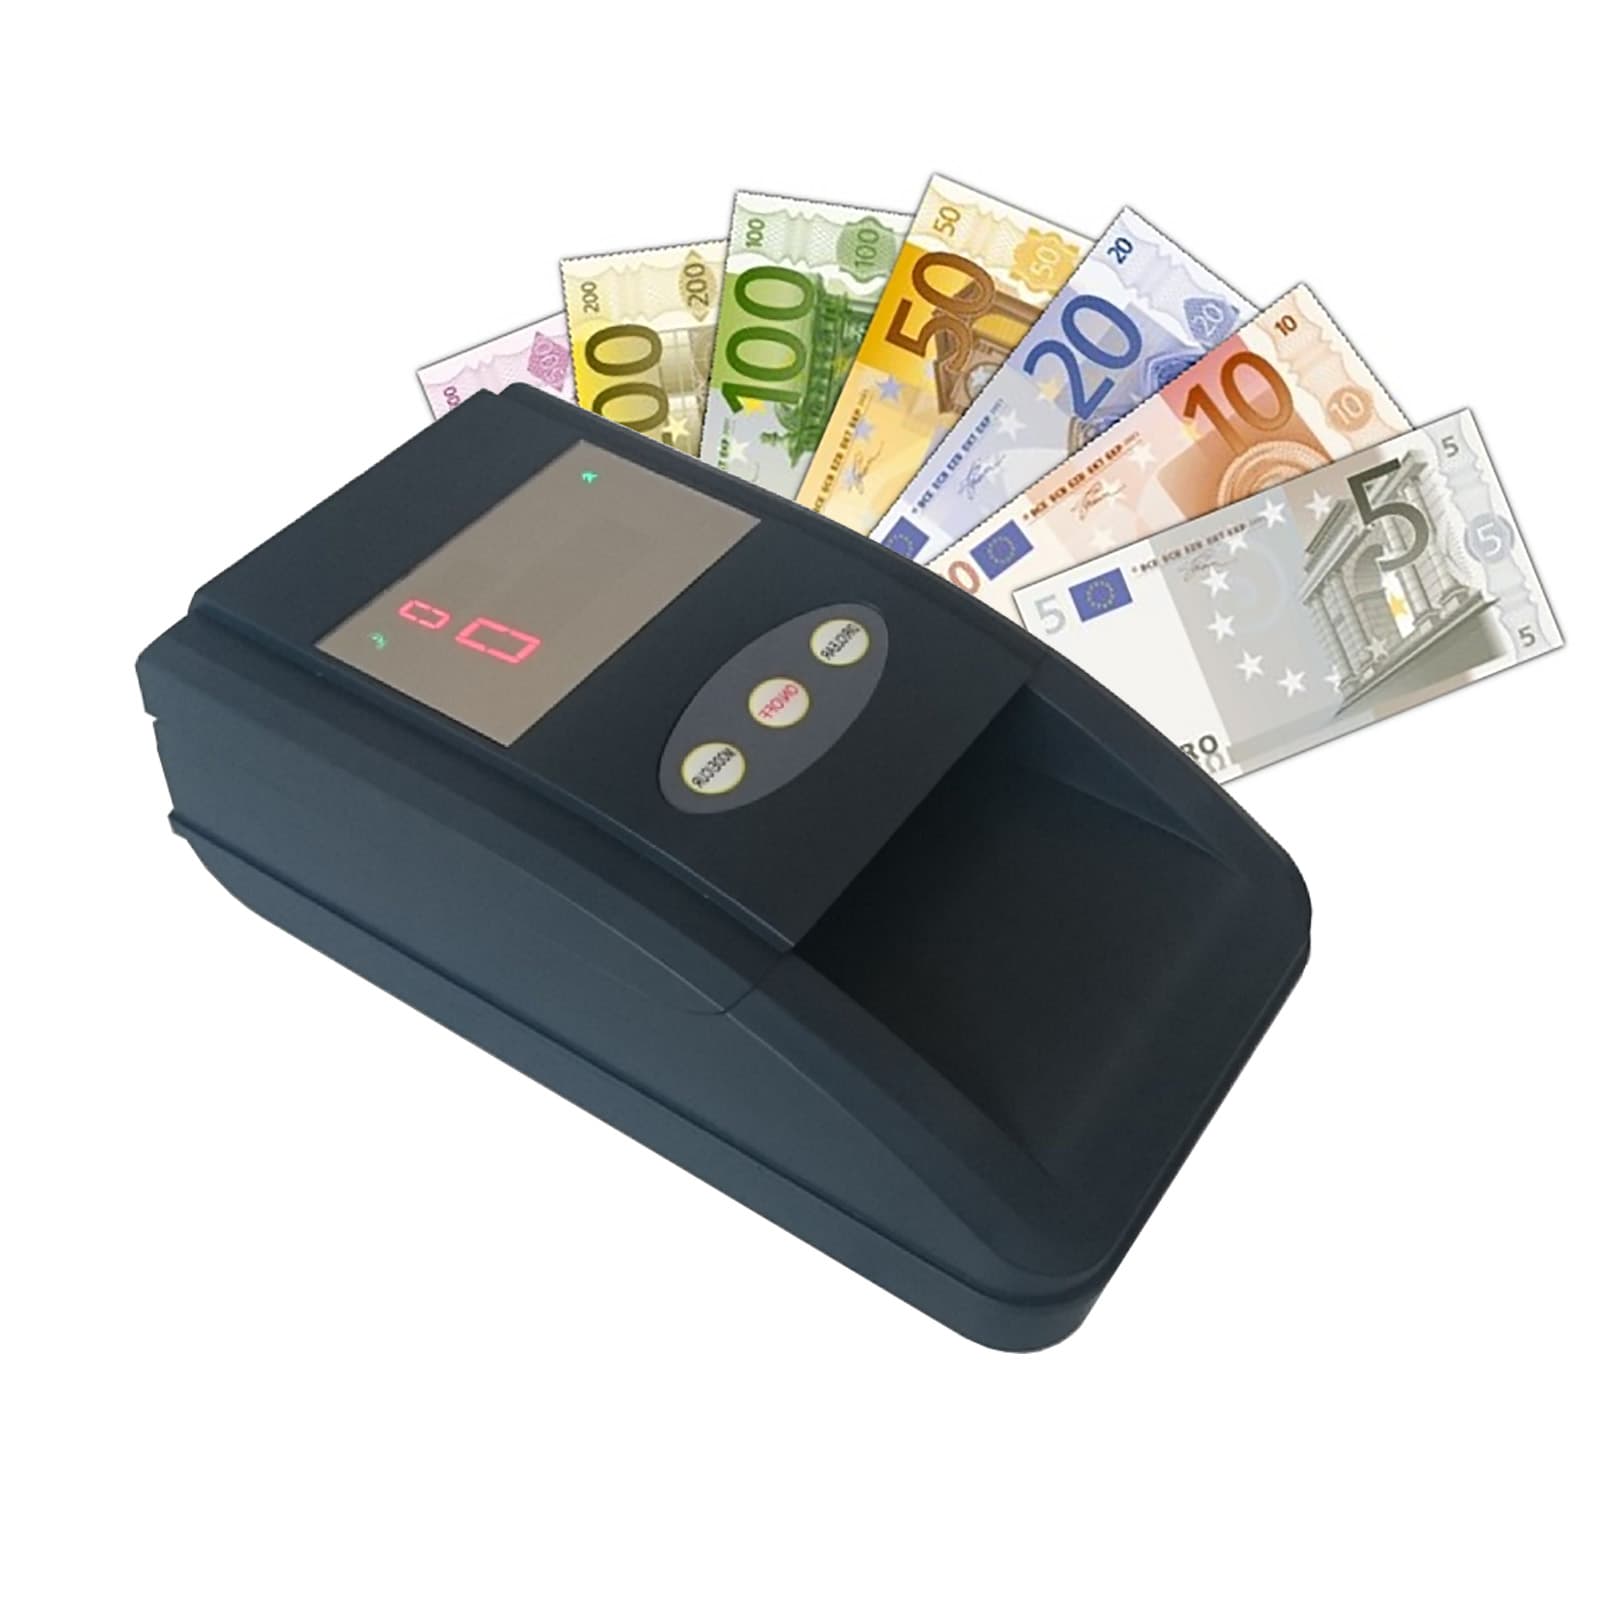 Banca d'Italia - Verifica delle banconote sospette di falsità